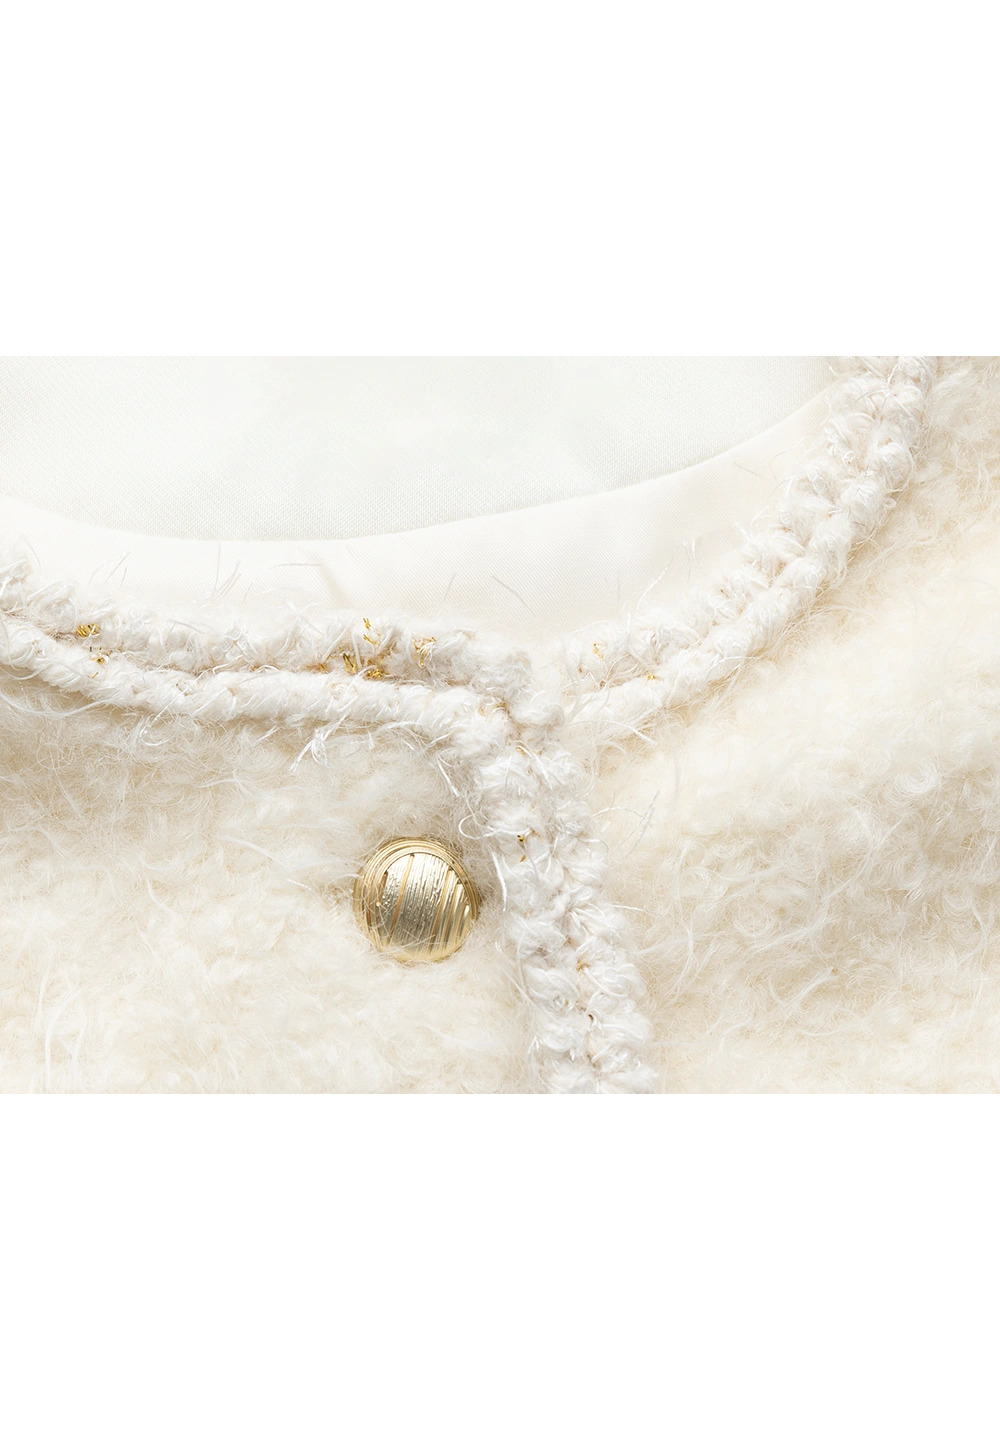 Ärmellose Damenweste aus Wollmischung mit Fransentaschen und goldenen Knopfdetails